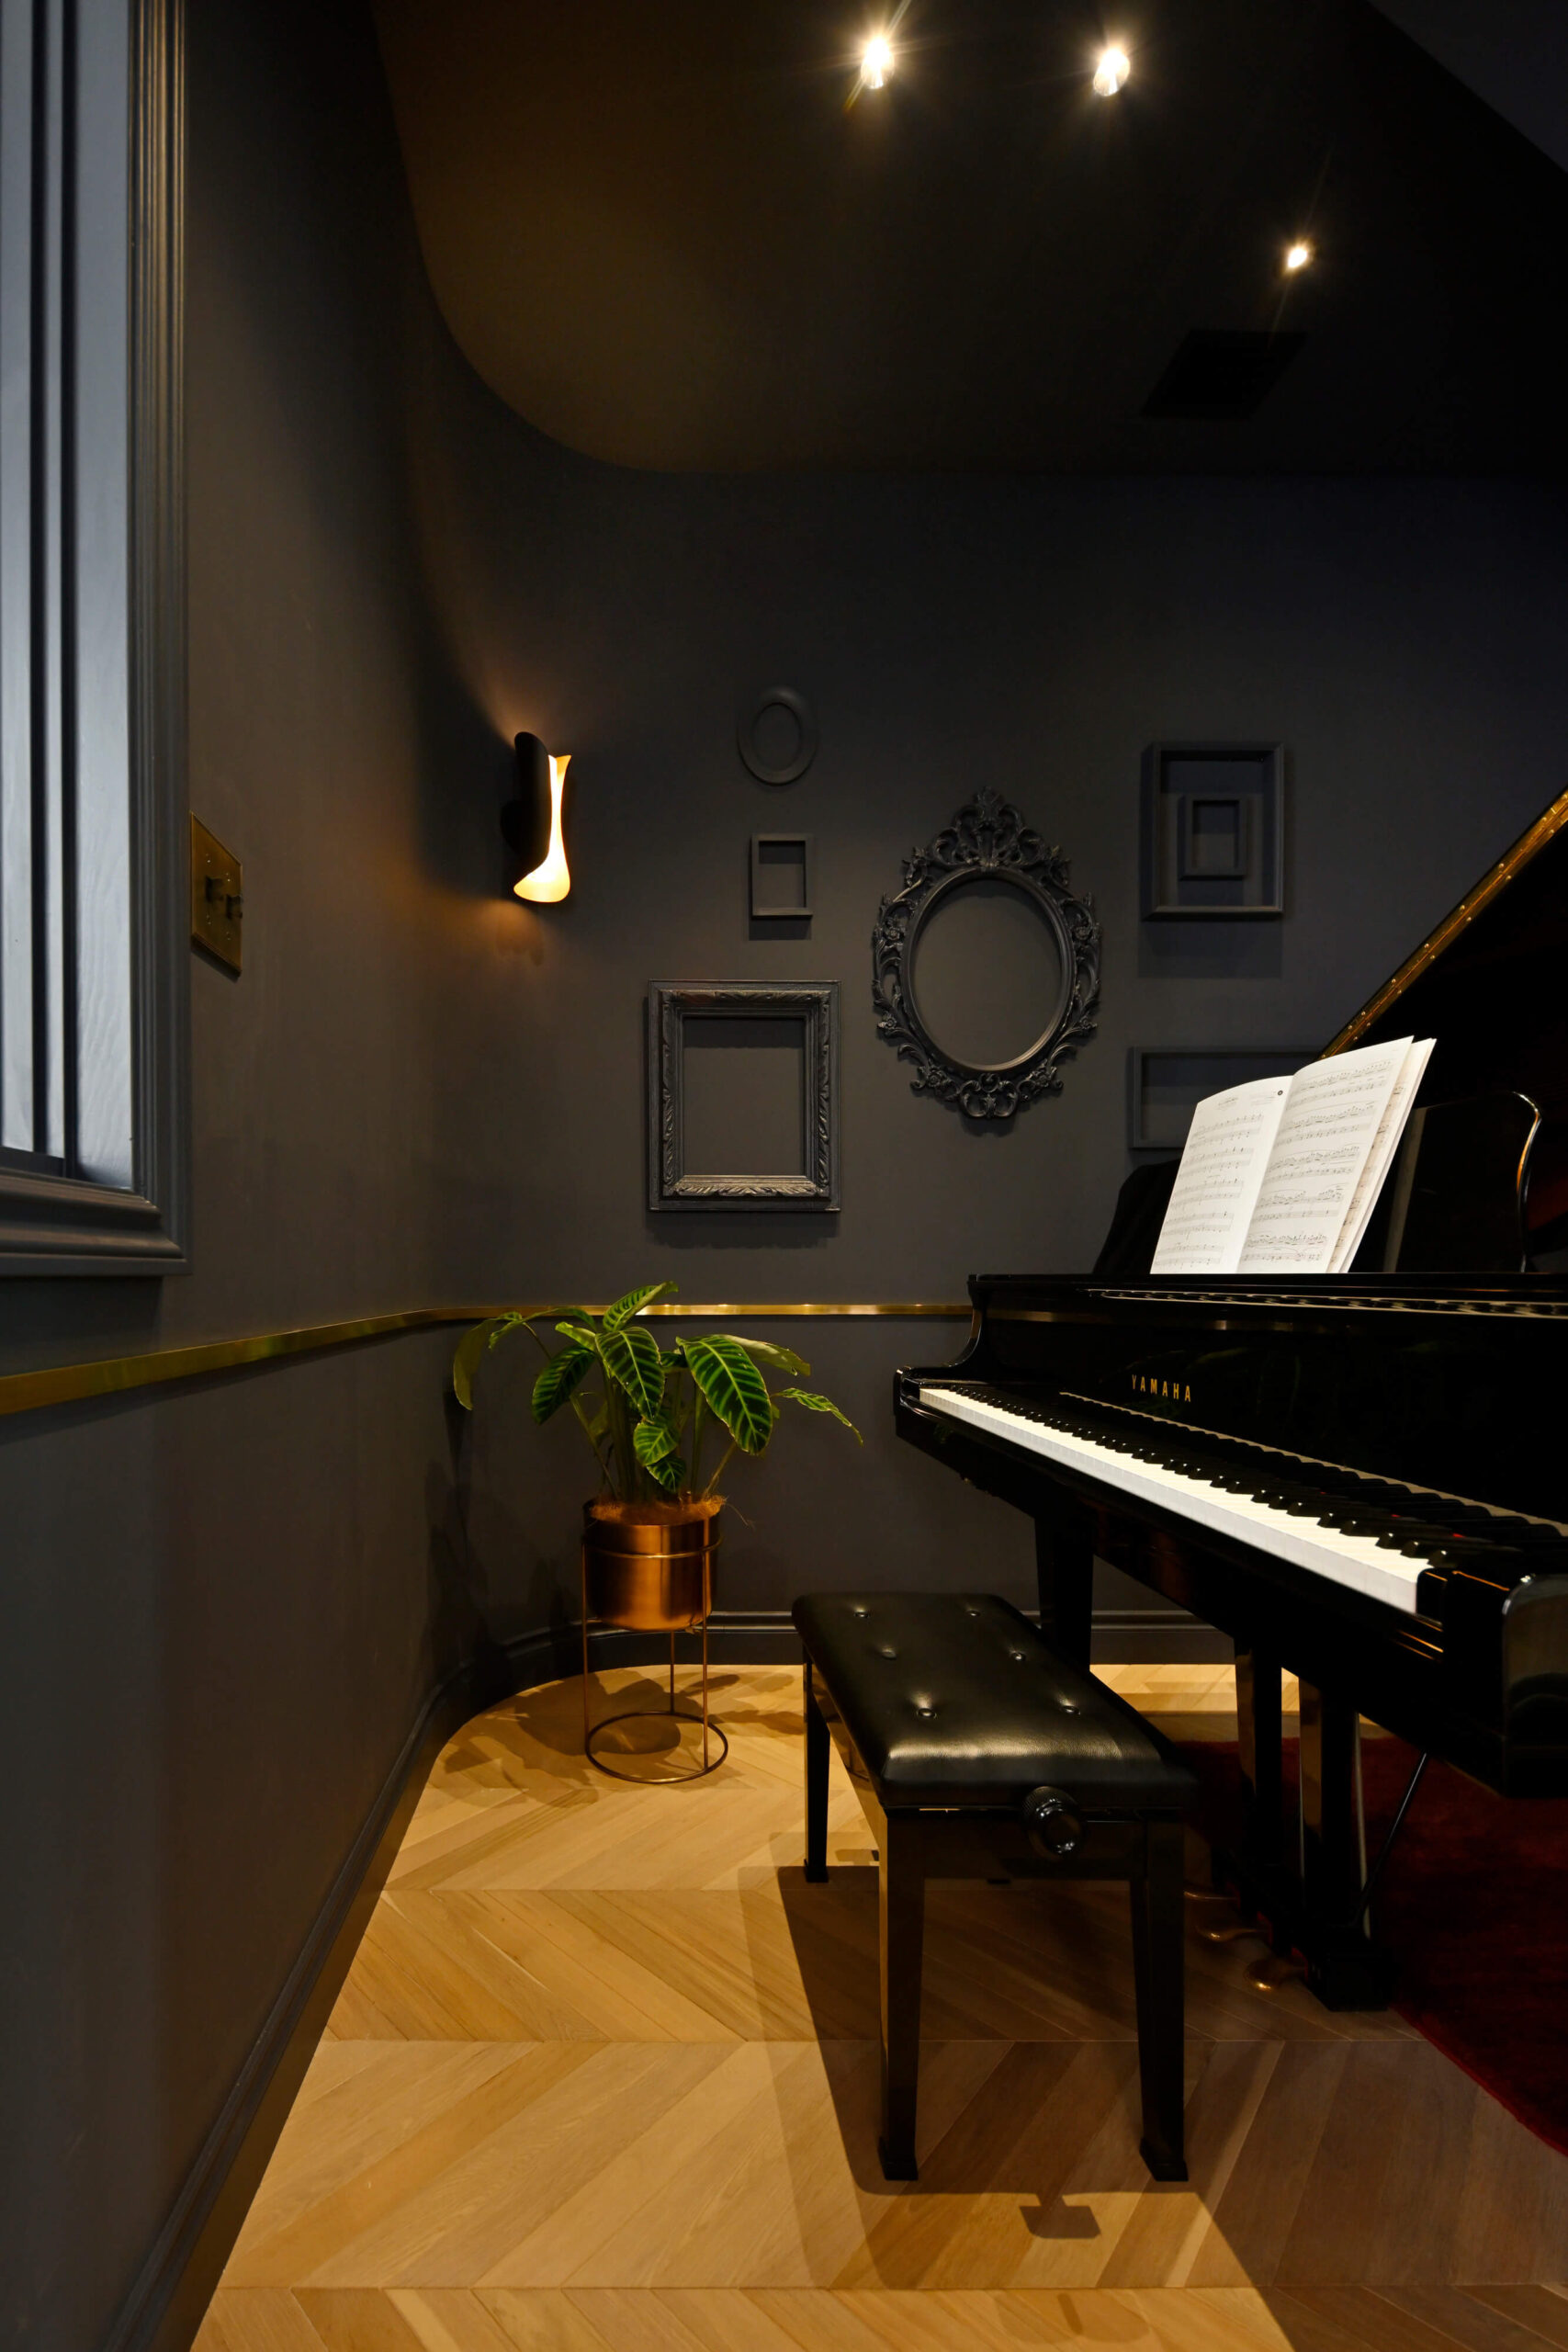 ファームハウススタイルのアメリカン輸入注文住宅の洋室とピアノ